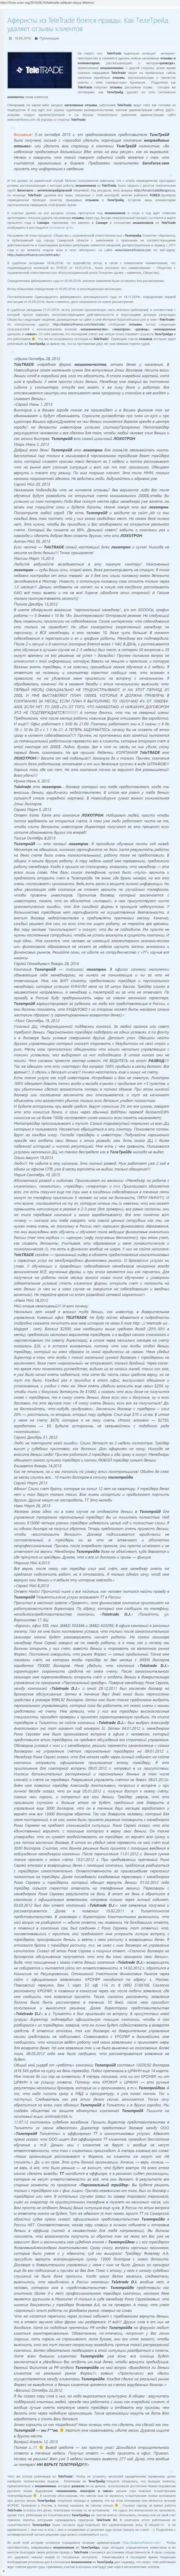 Свидетельство ДДОС атак в отношении неугодных лиц для наглых лохотронщиков TeleTrade Ru